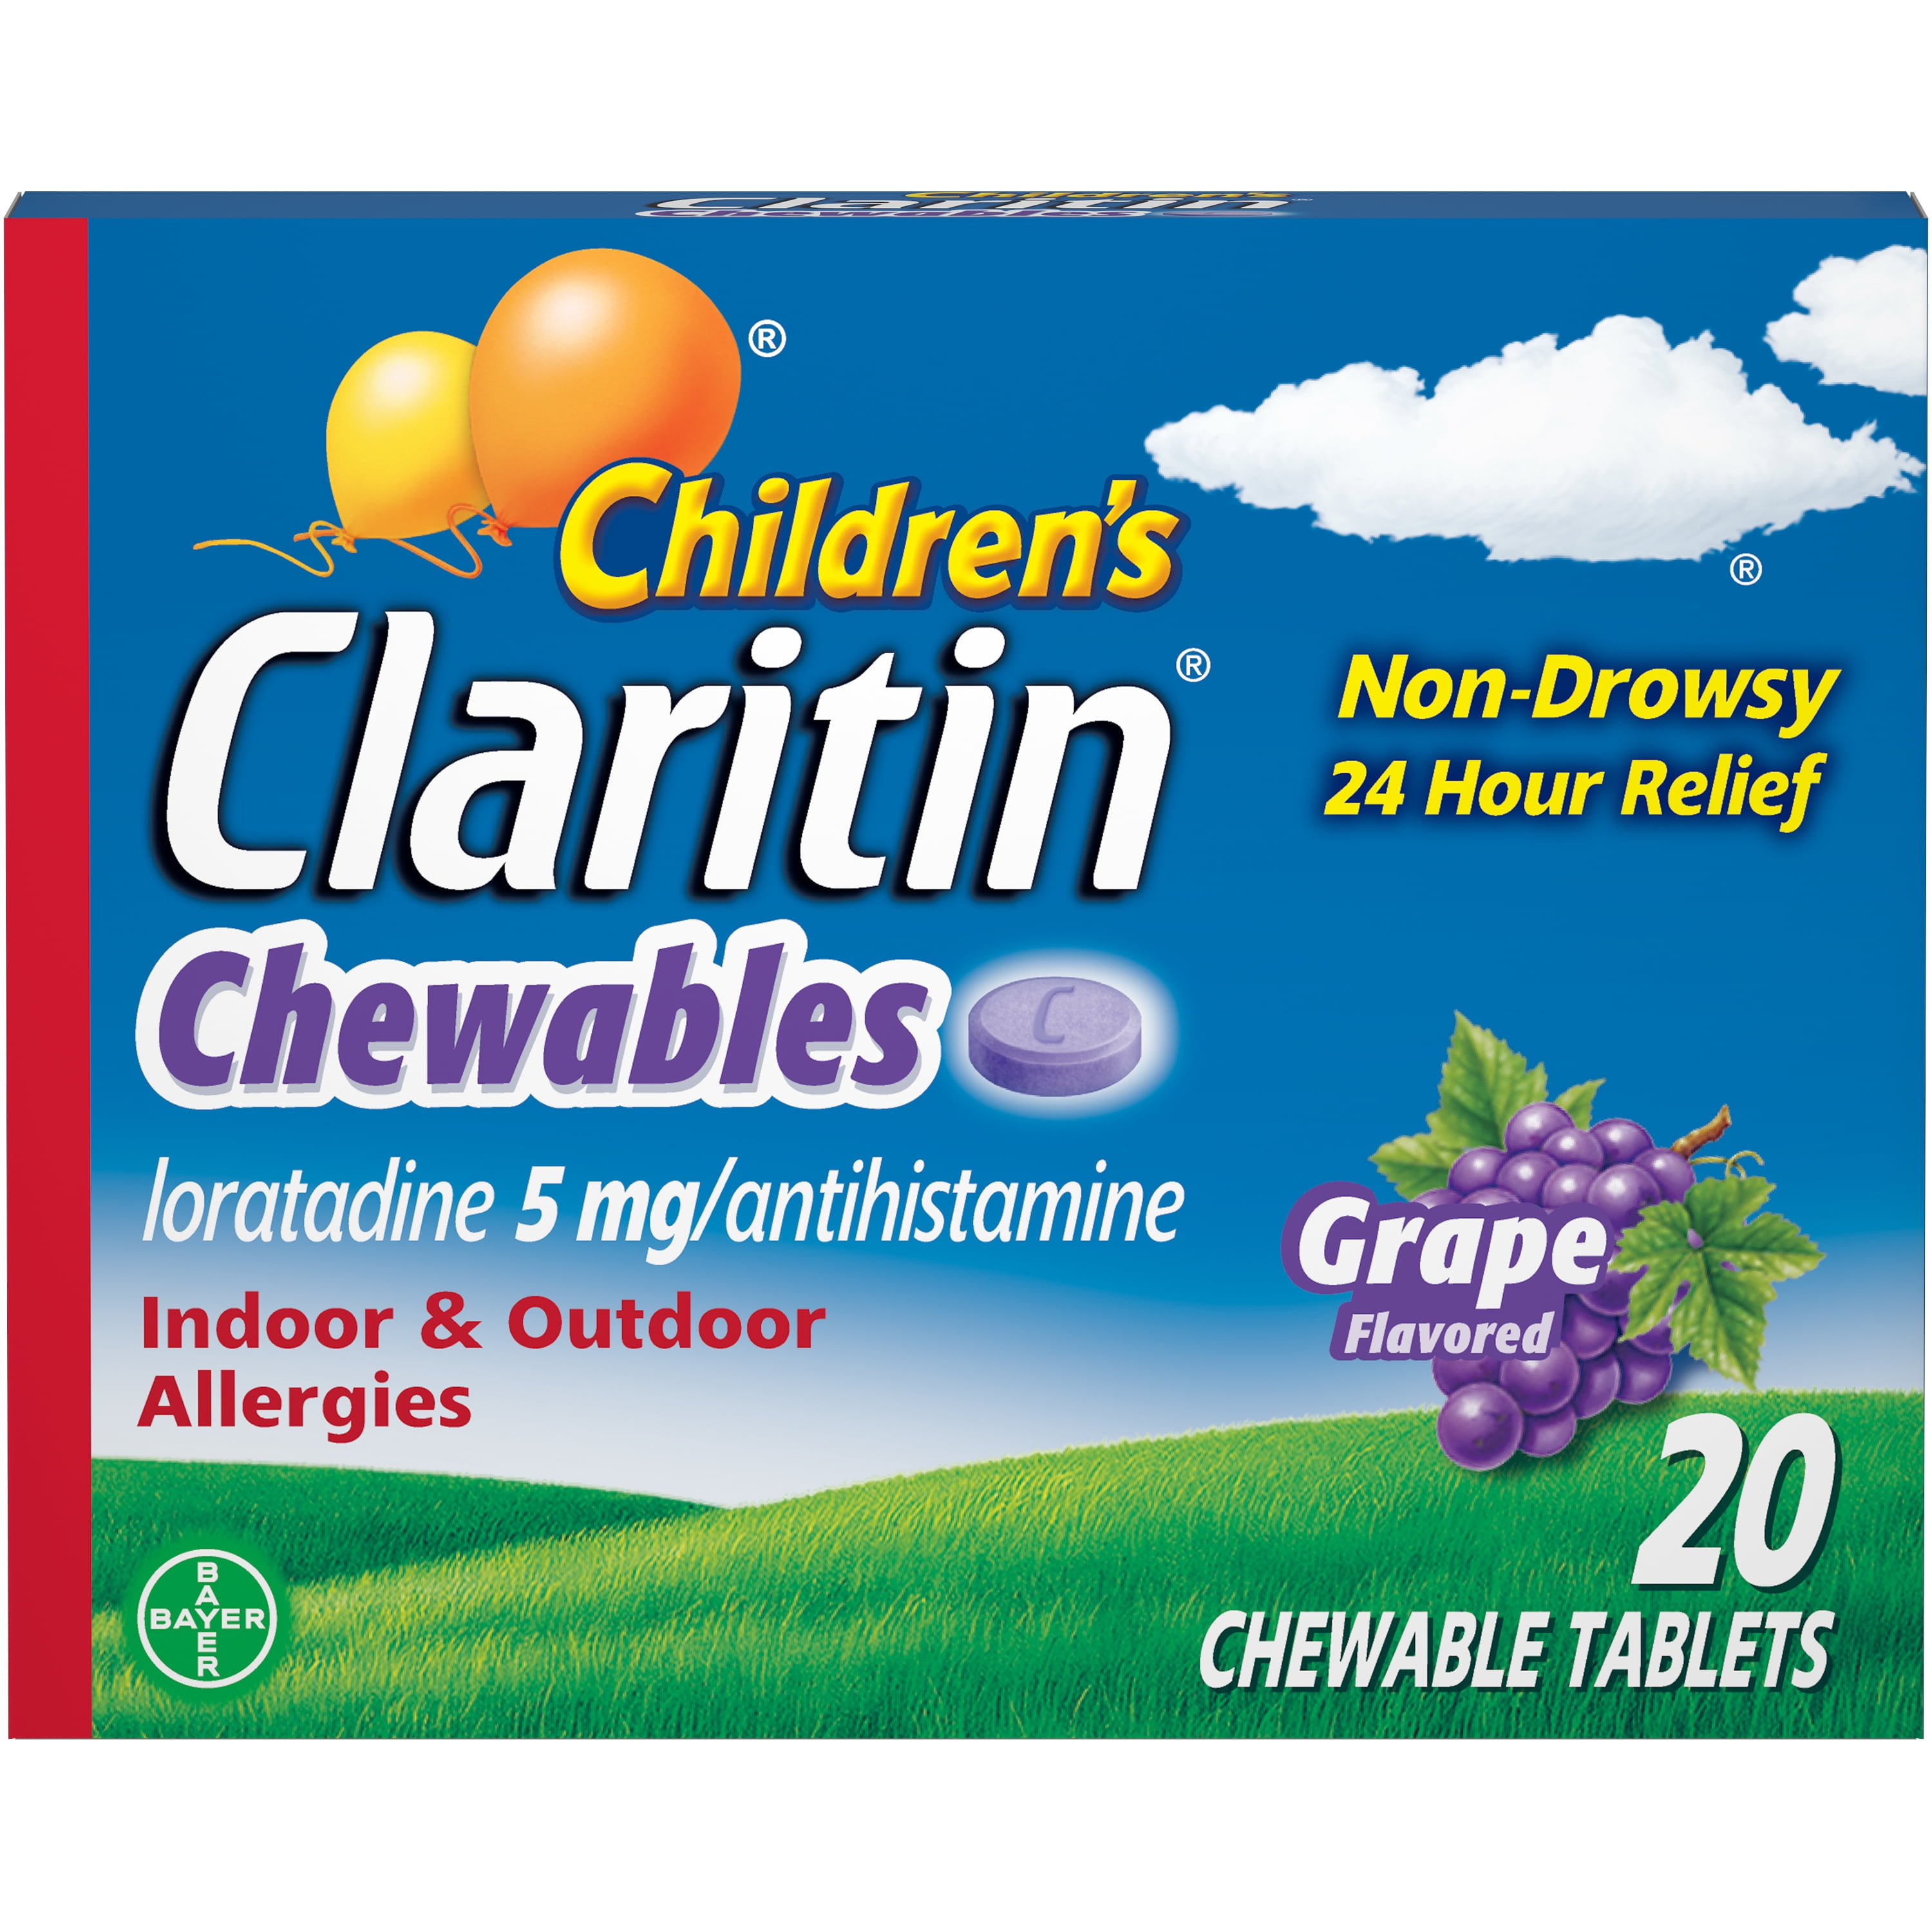 Claritin Dosage Chart